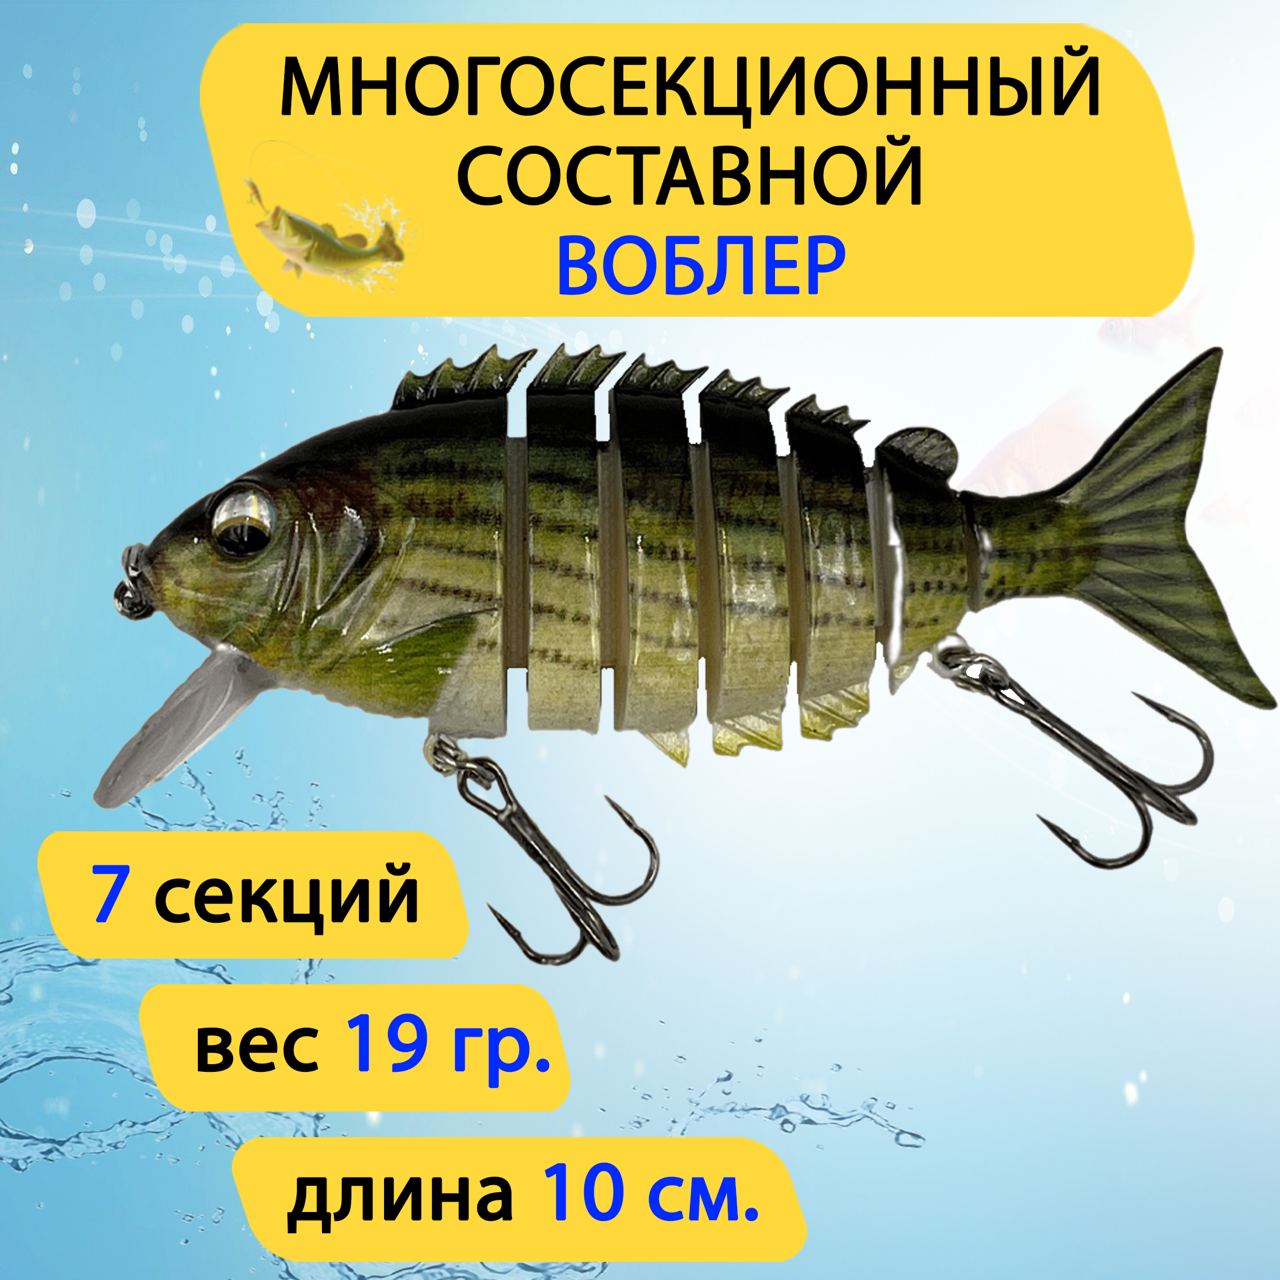 Составной воблер Карась GC-Famiscom рыболовная блесна на хищника 10 см, 19 г